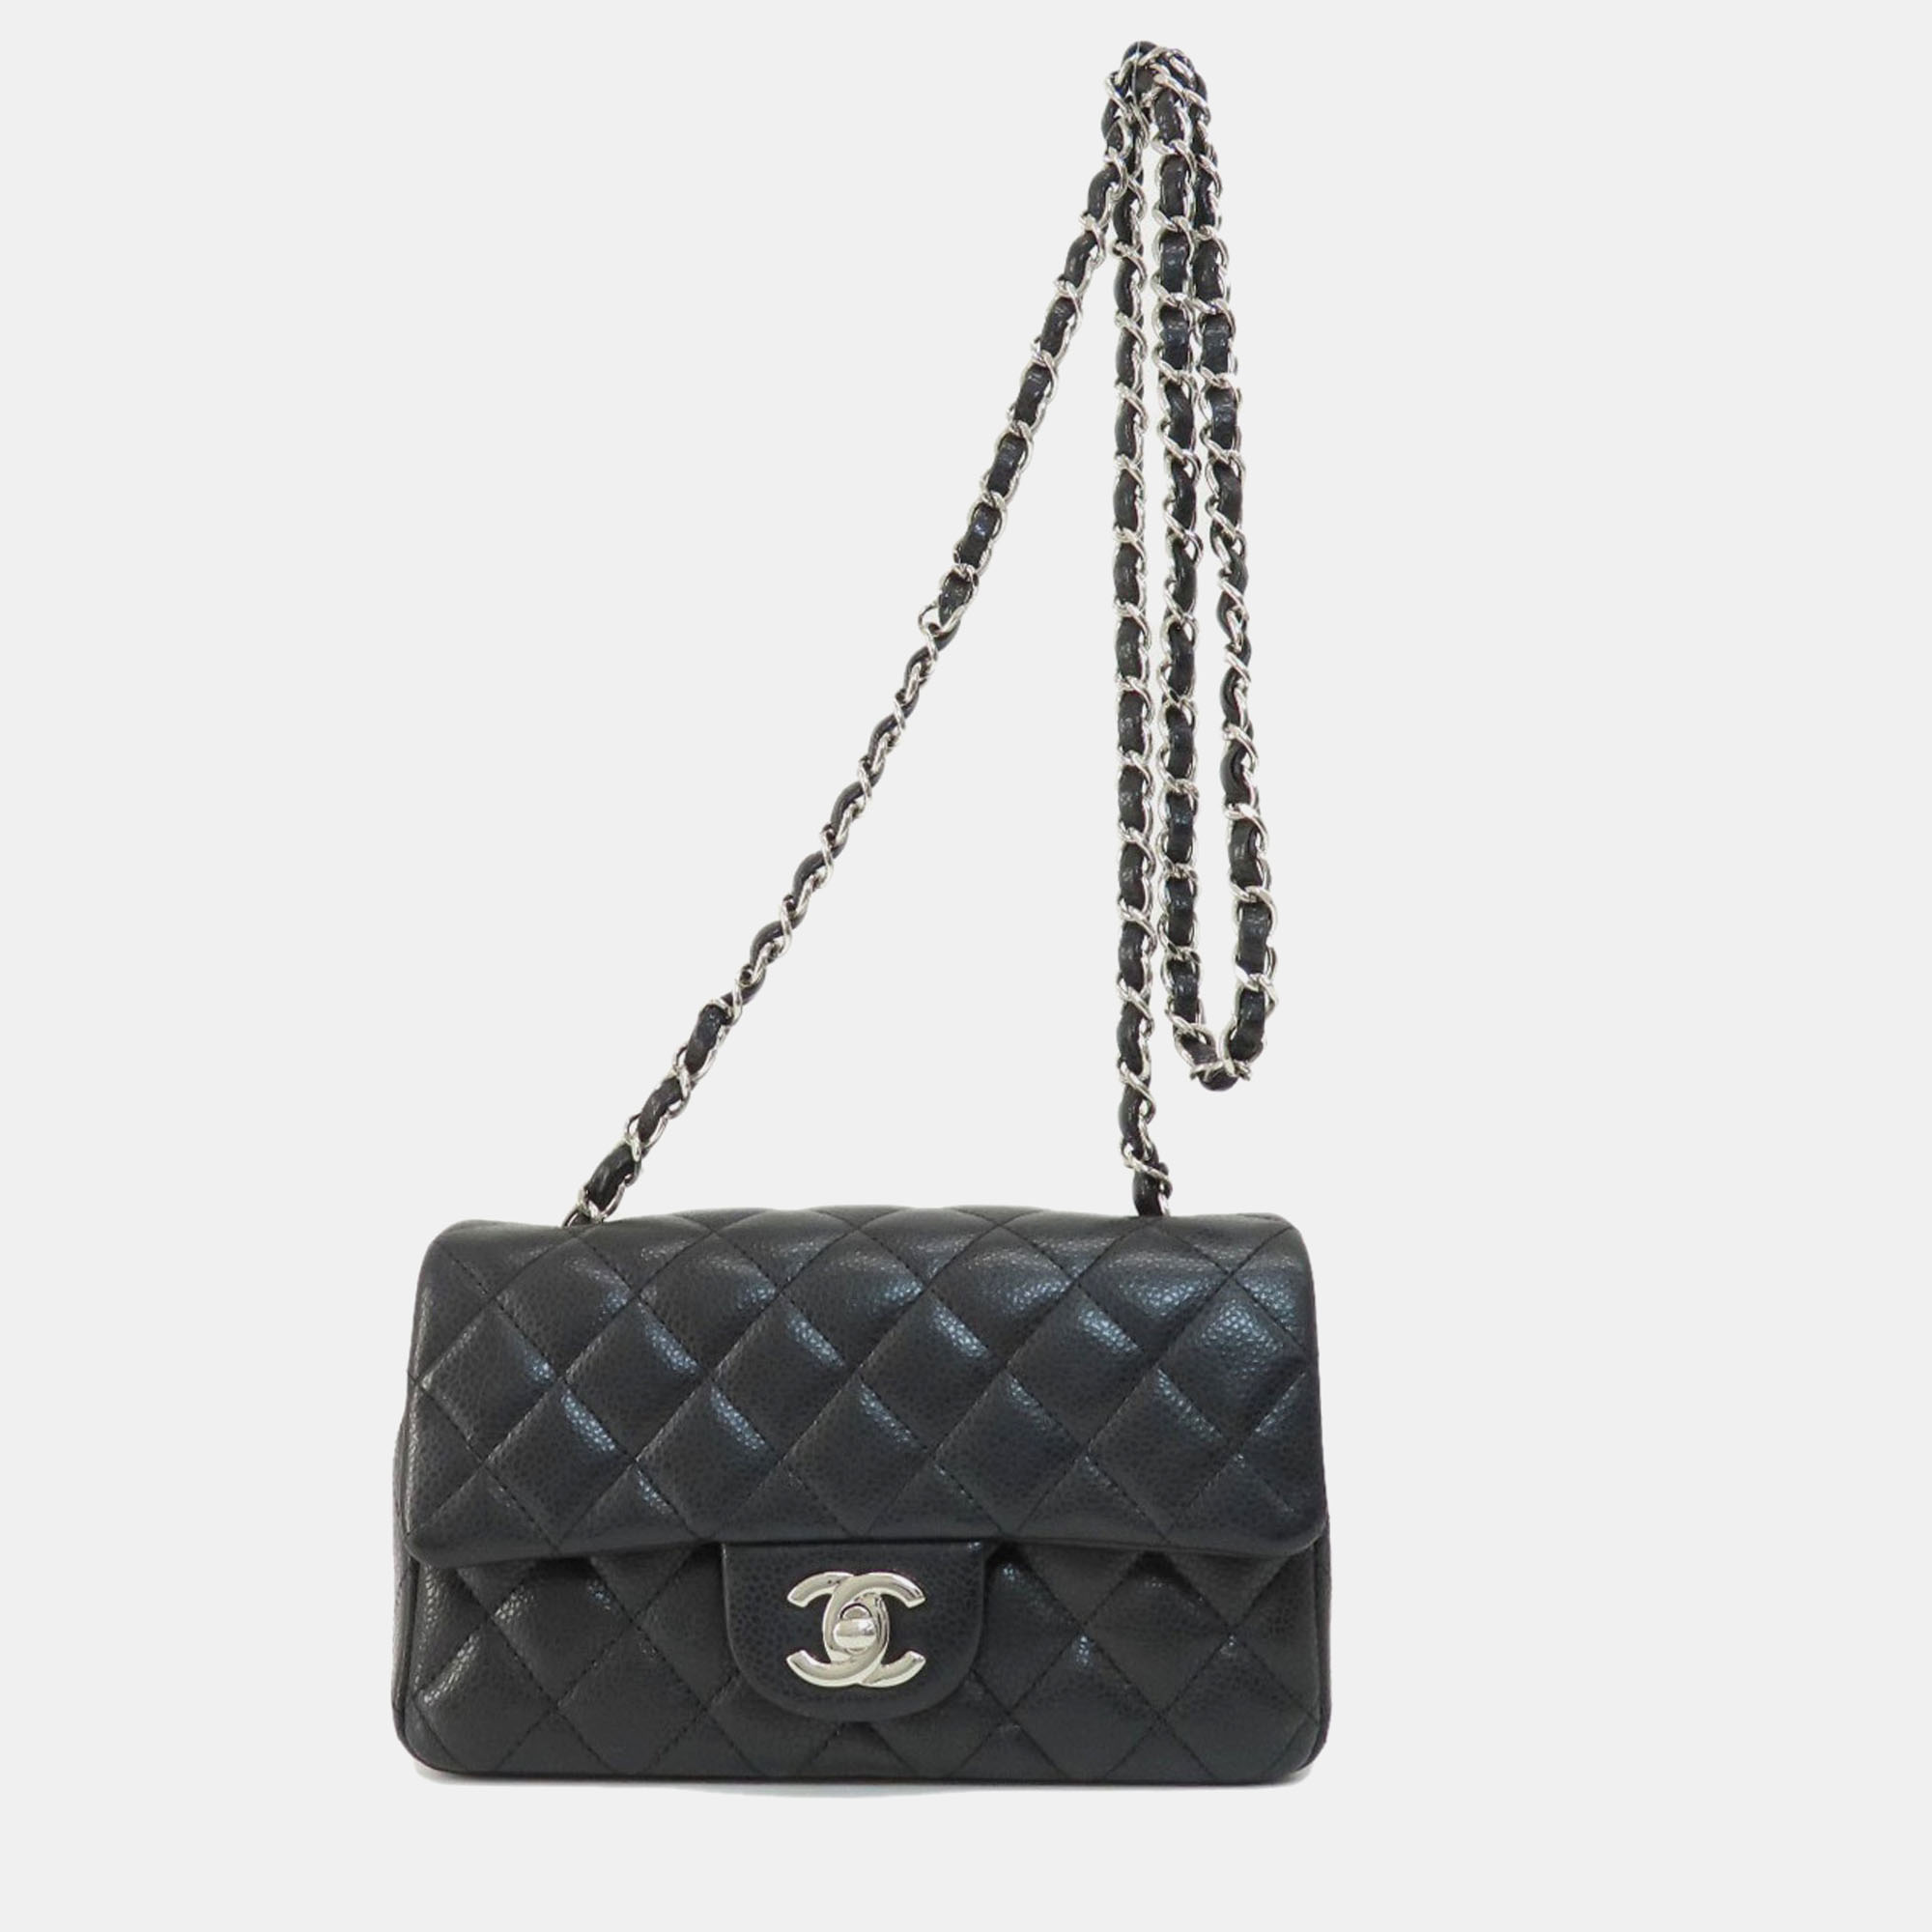 Chanel black caviar leather  flap bag shoulder bag